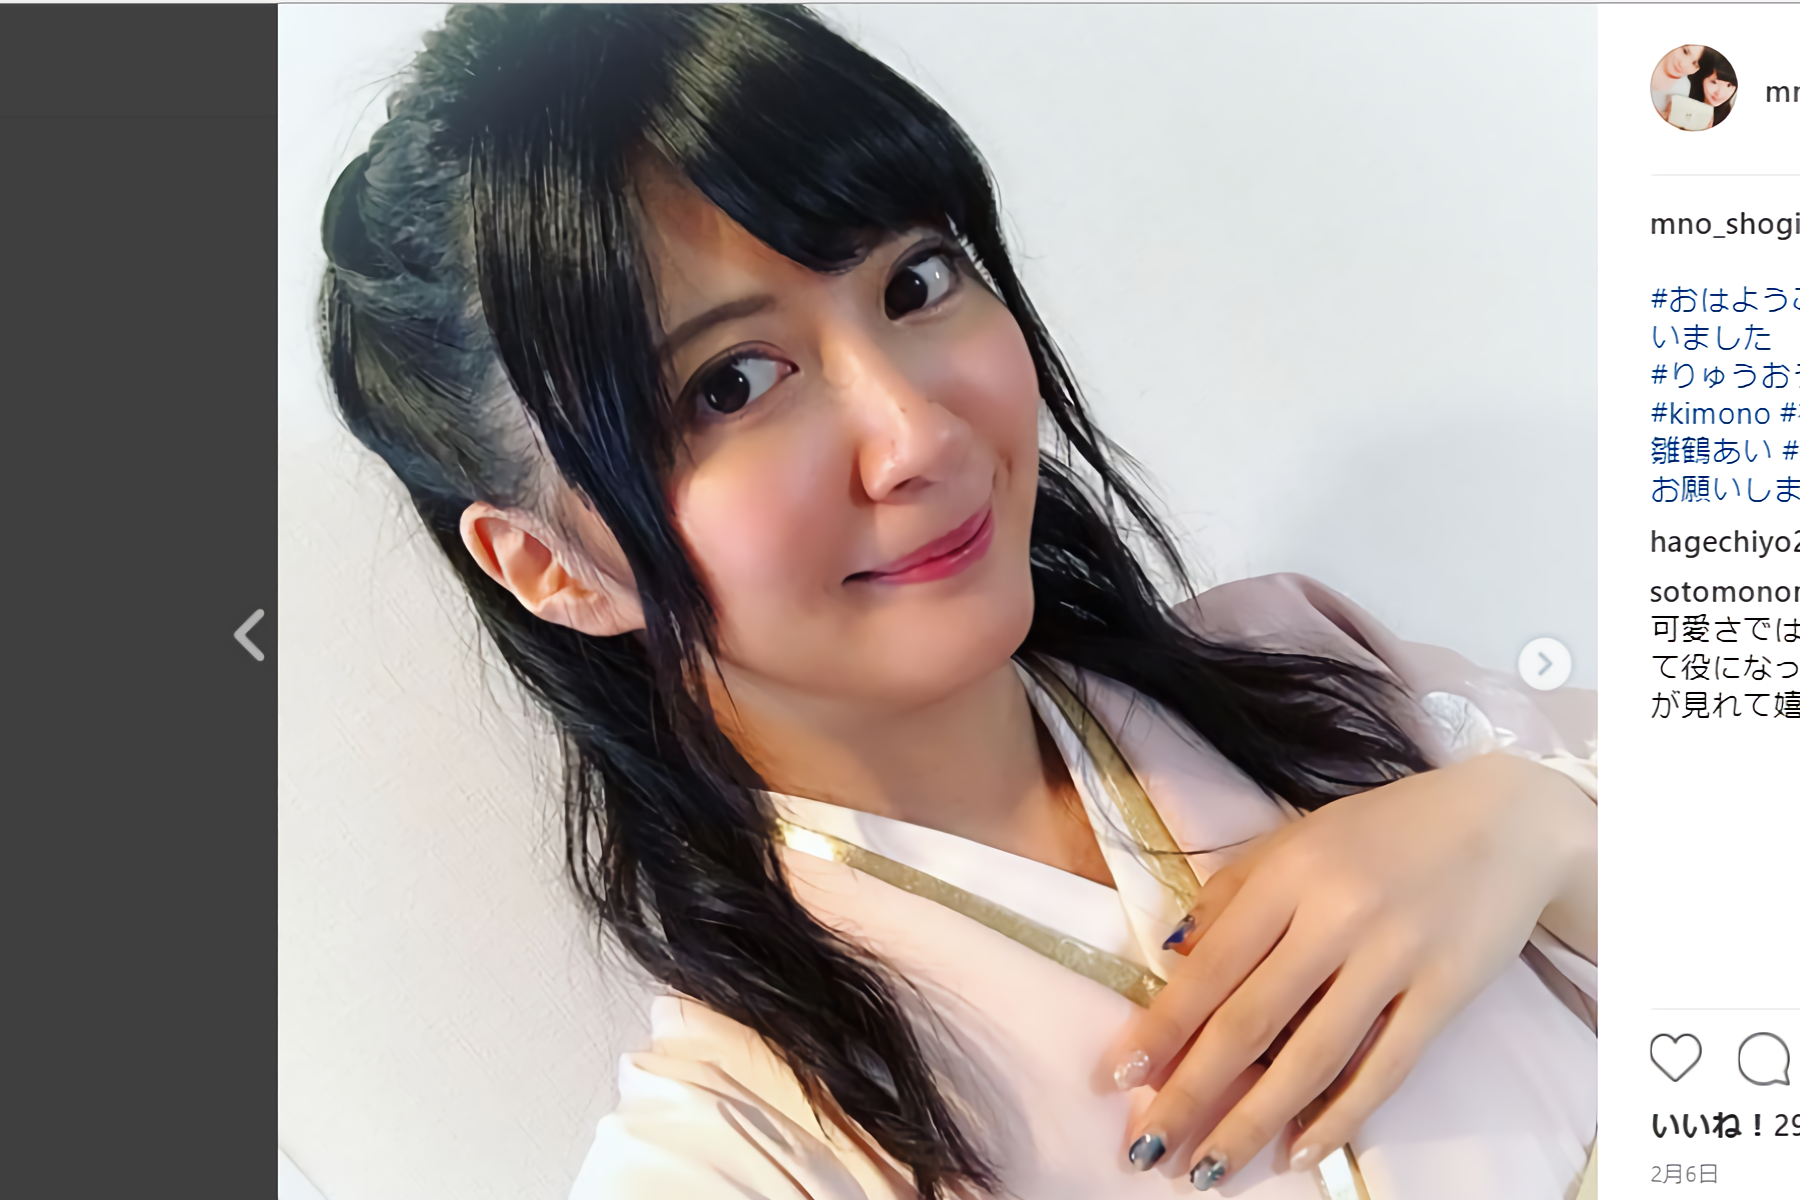 美しすぎる女流棋士 香川愛生の本気コスプレ姿にバカリズム興奮 なんかエロい ニュースサイトしらべぇ